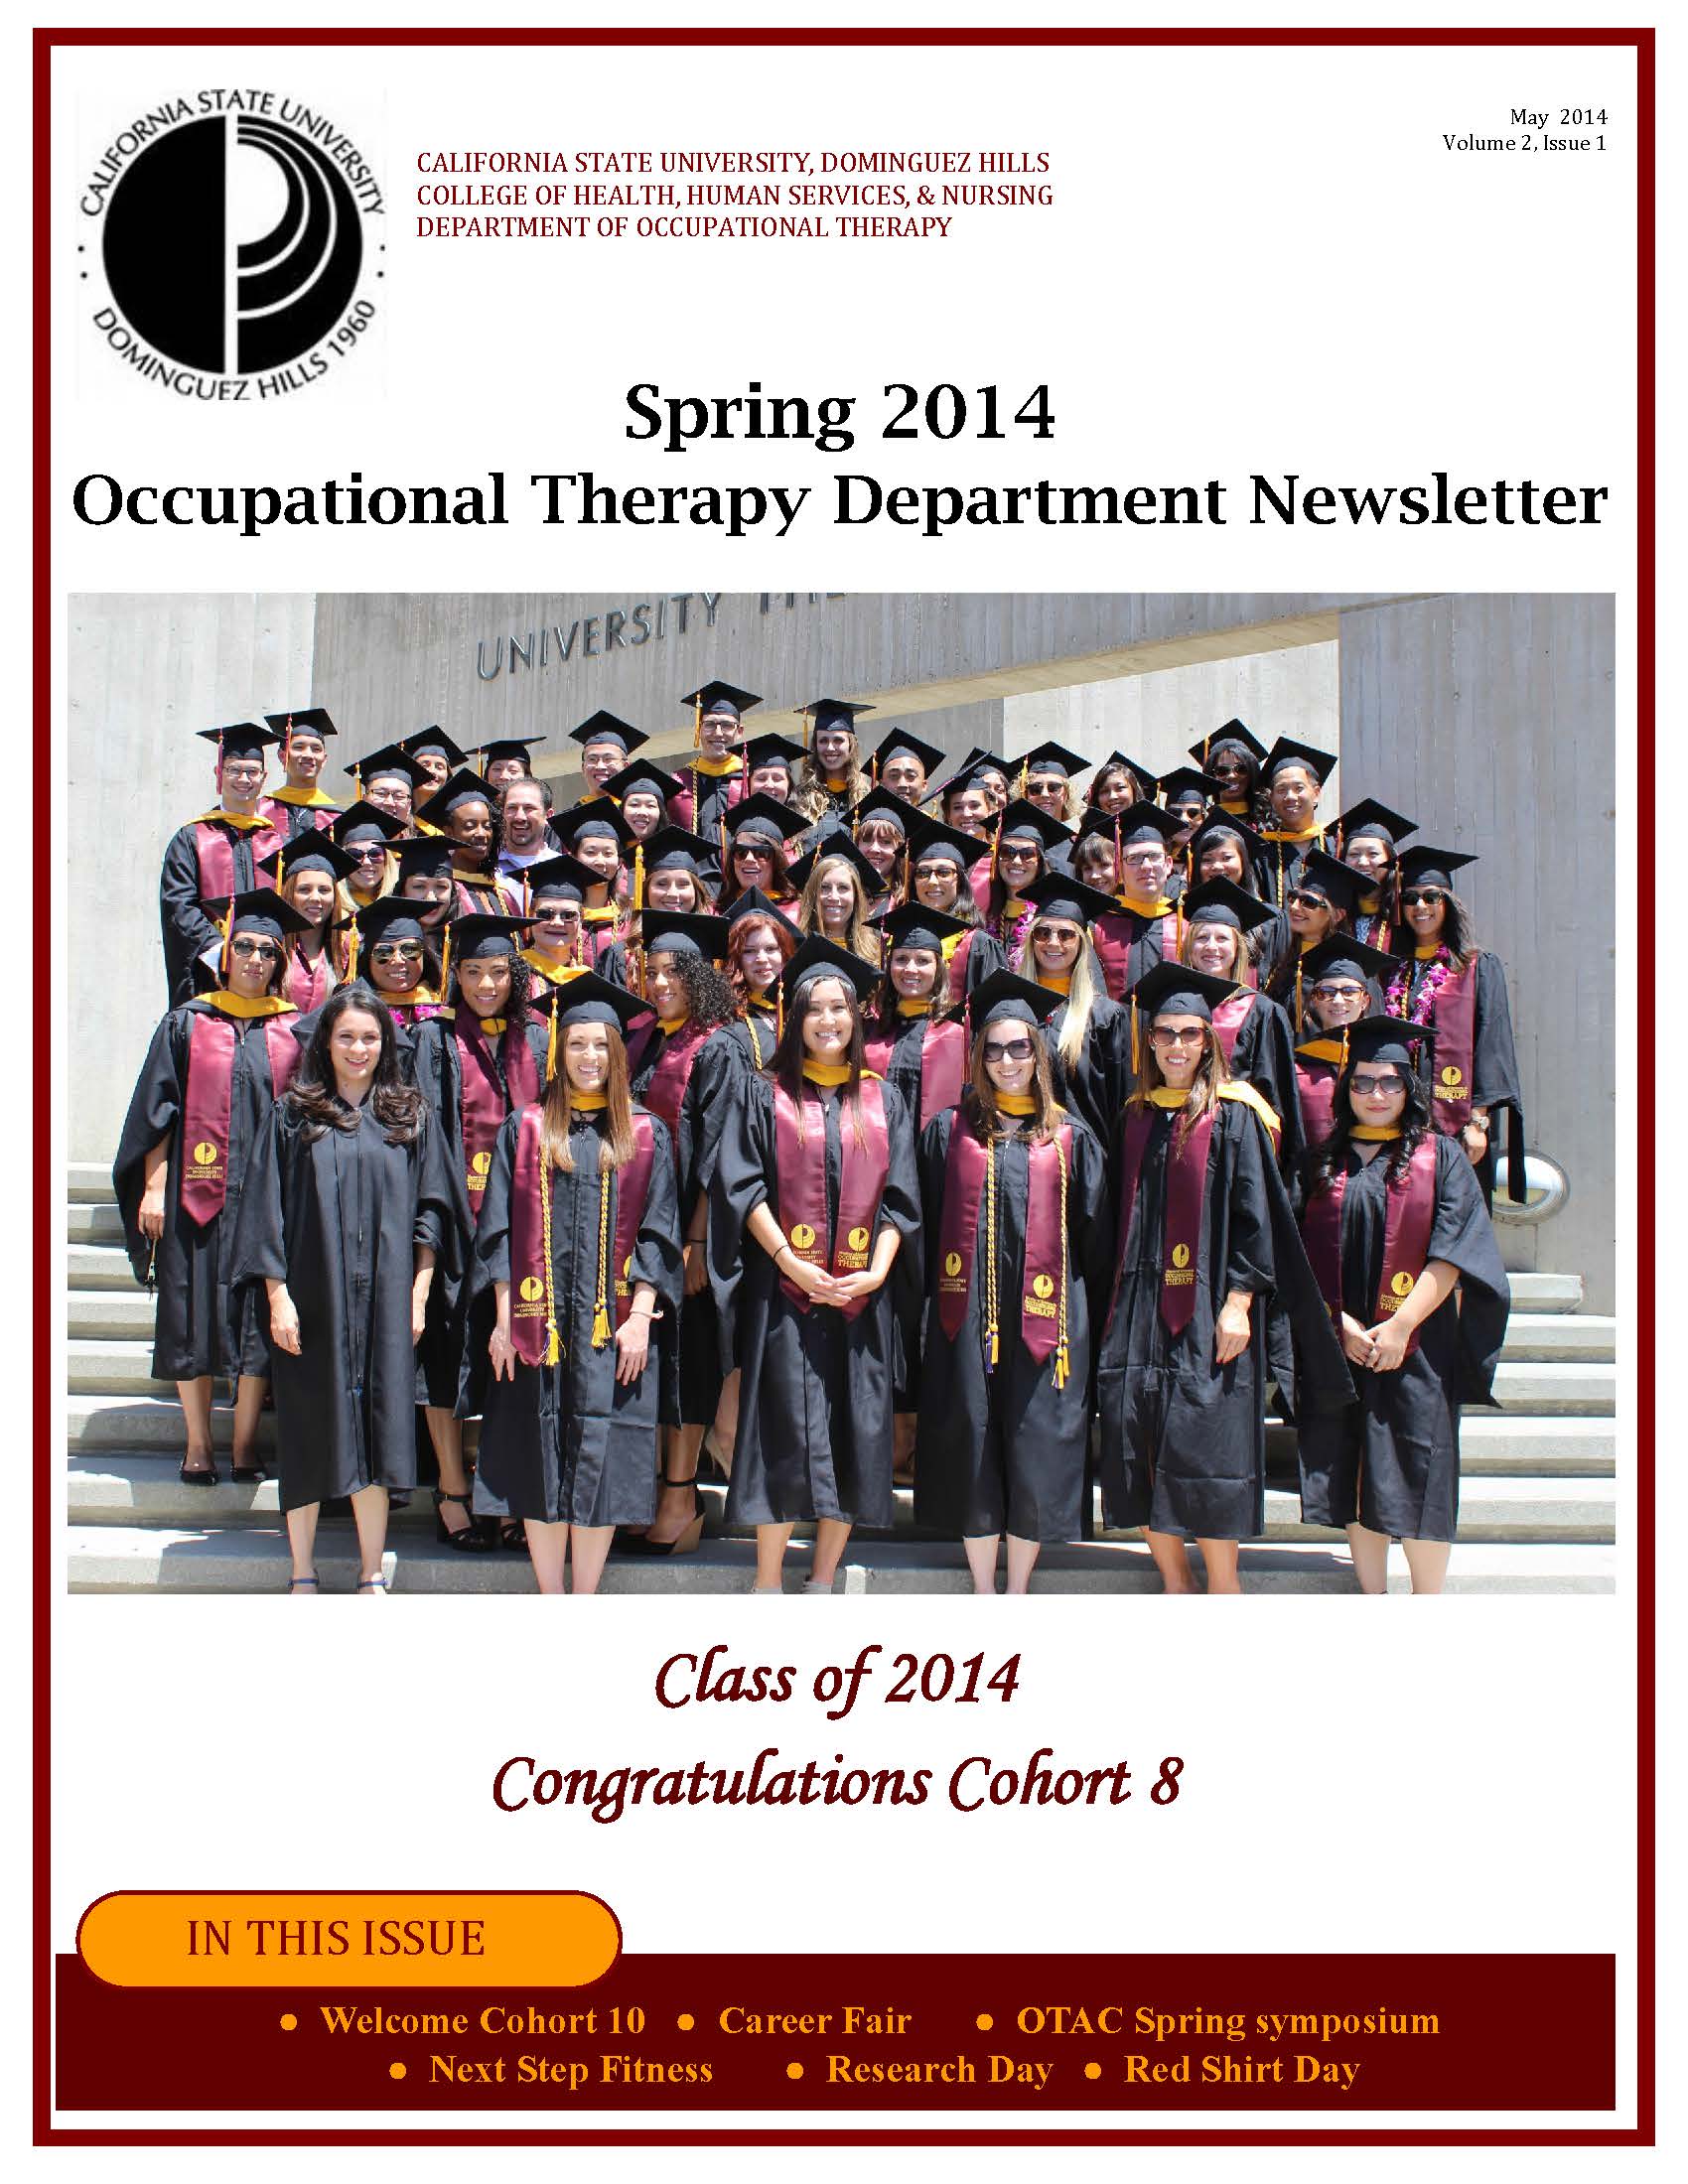 OT Spring 2014 Newsletter cover